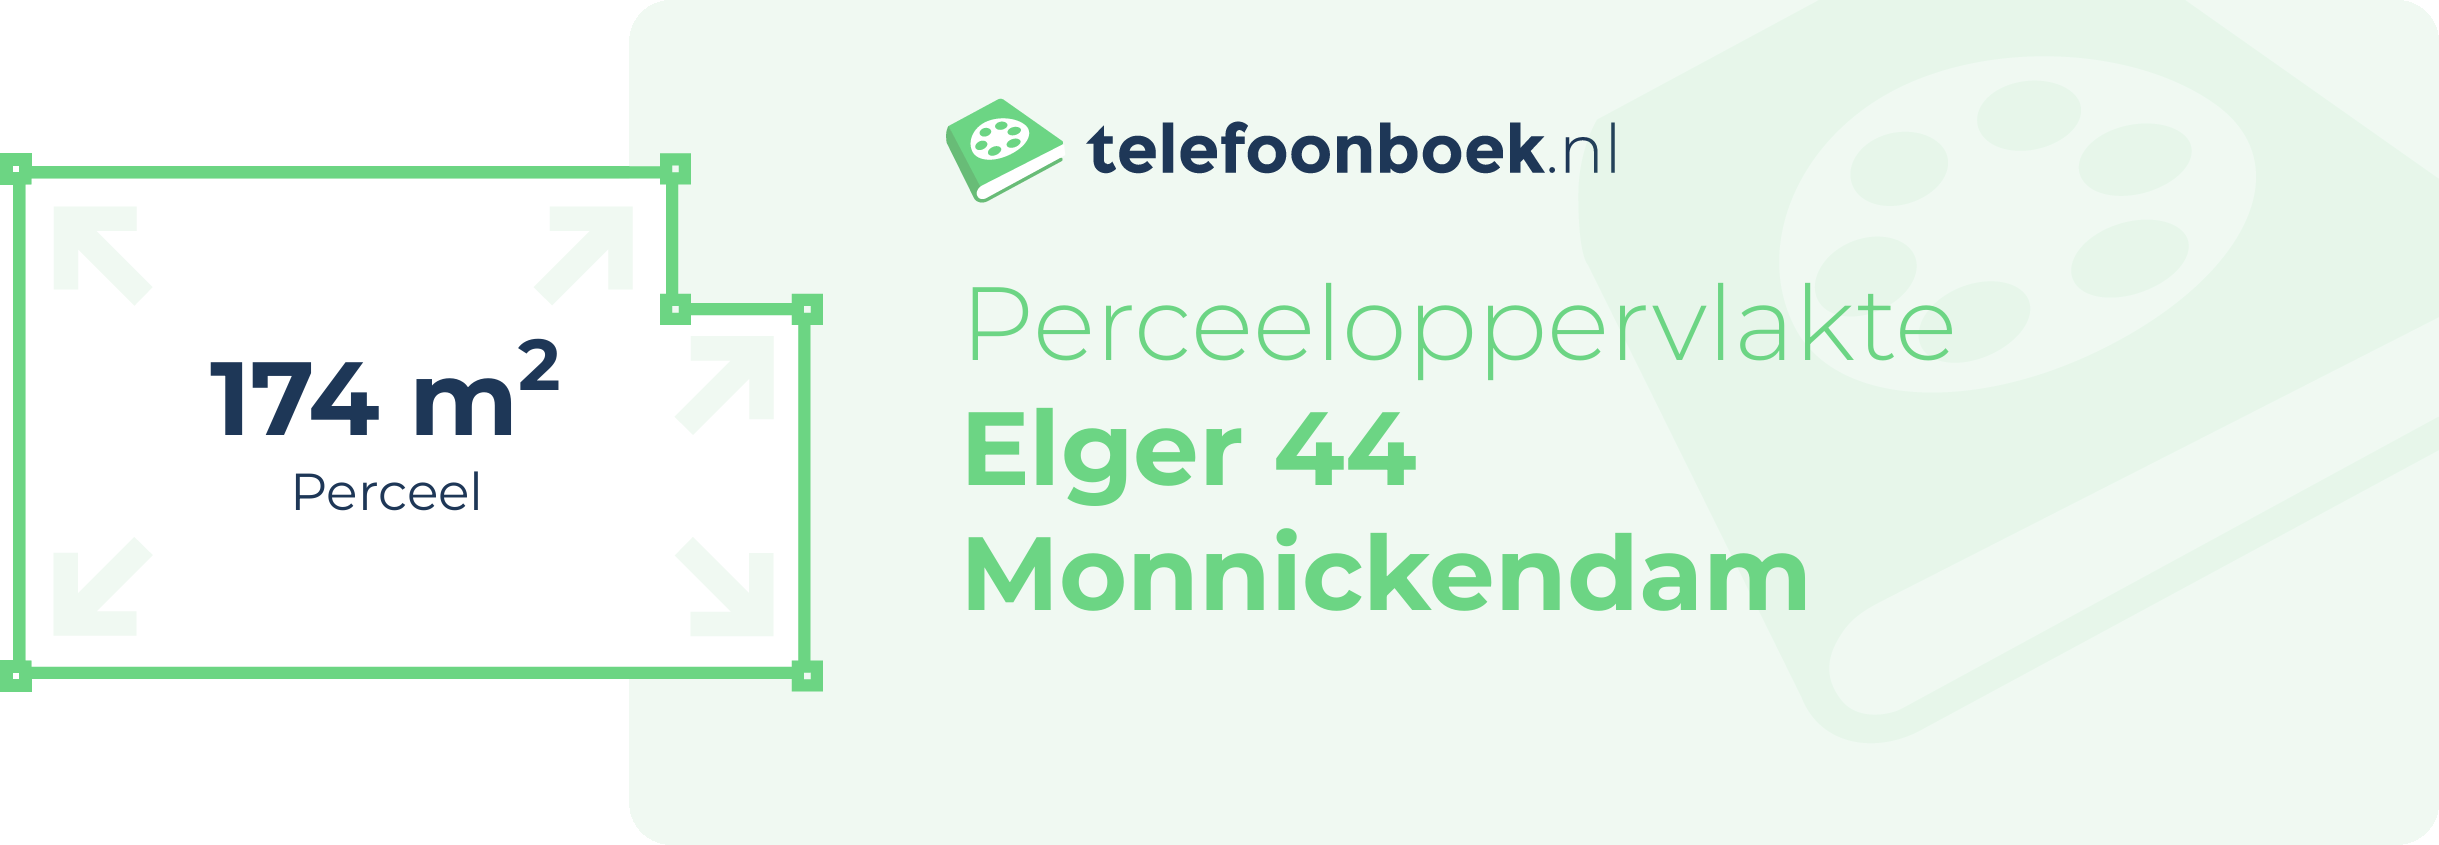 Perceeloppervlakte Elger 44 Monnickendam